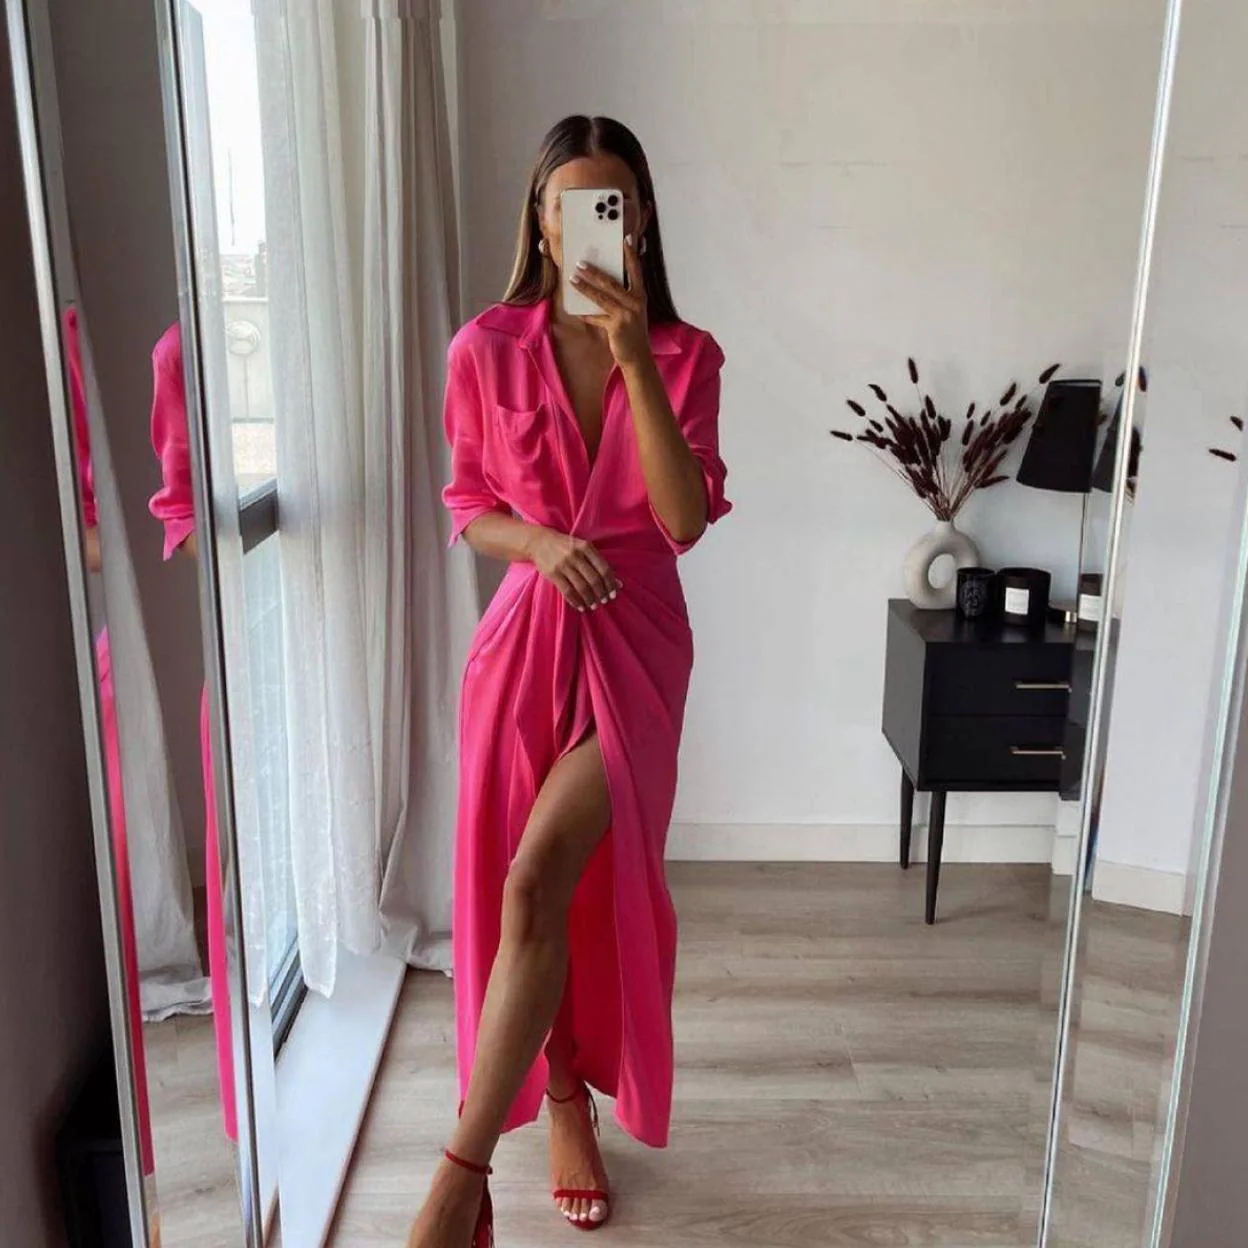 El vestido de Zara que ha enamorado Instagram es de edición limitada (y punto de agotarse) | Hoy